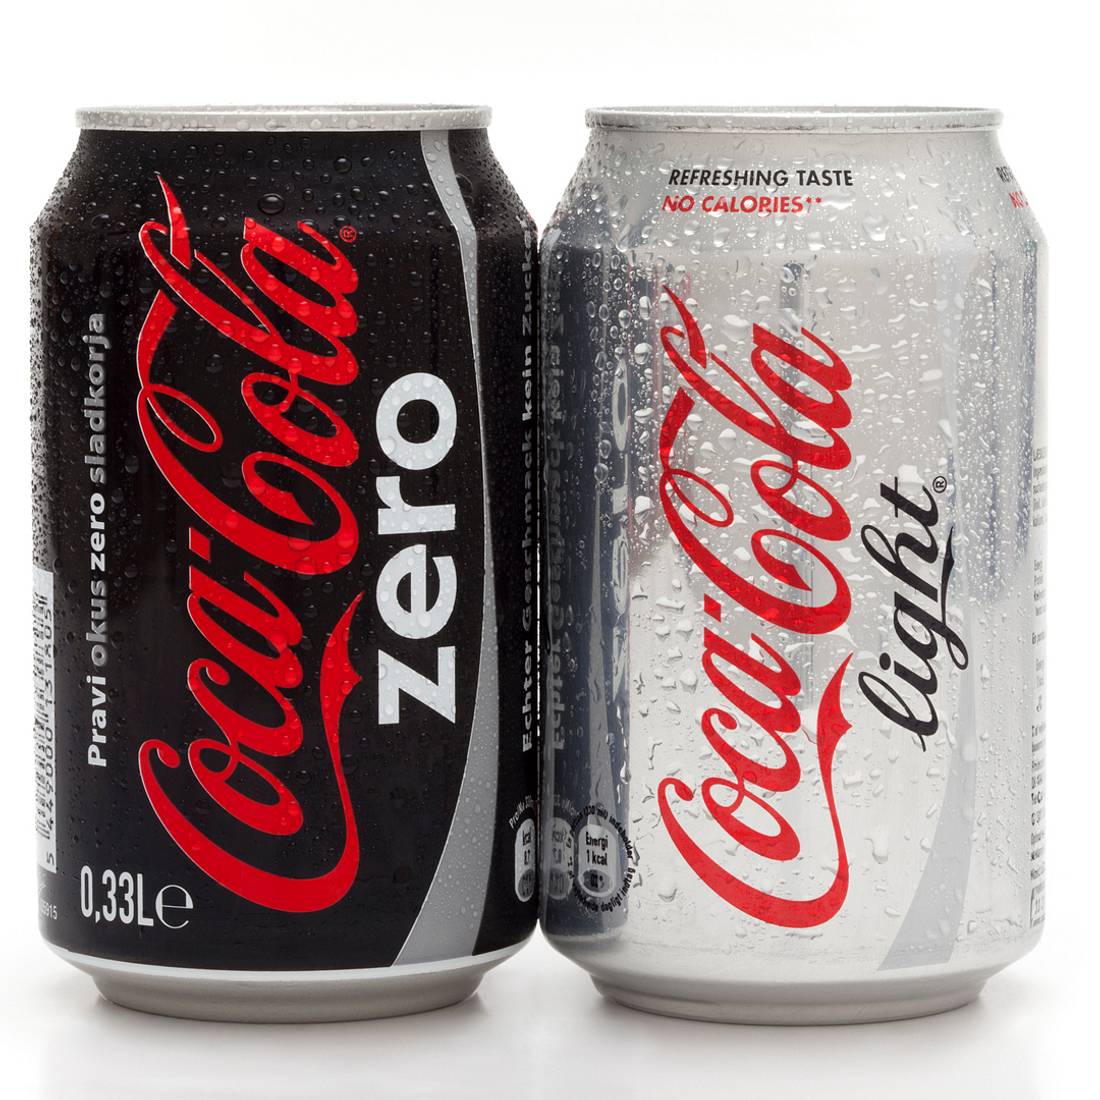 So gefährlich ist Cola Zero und Coke Light